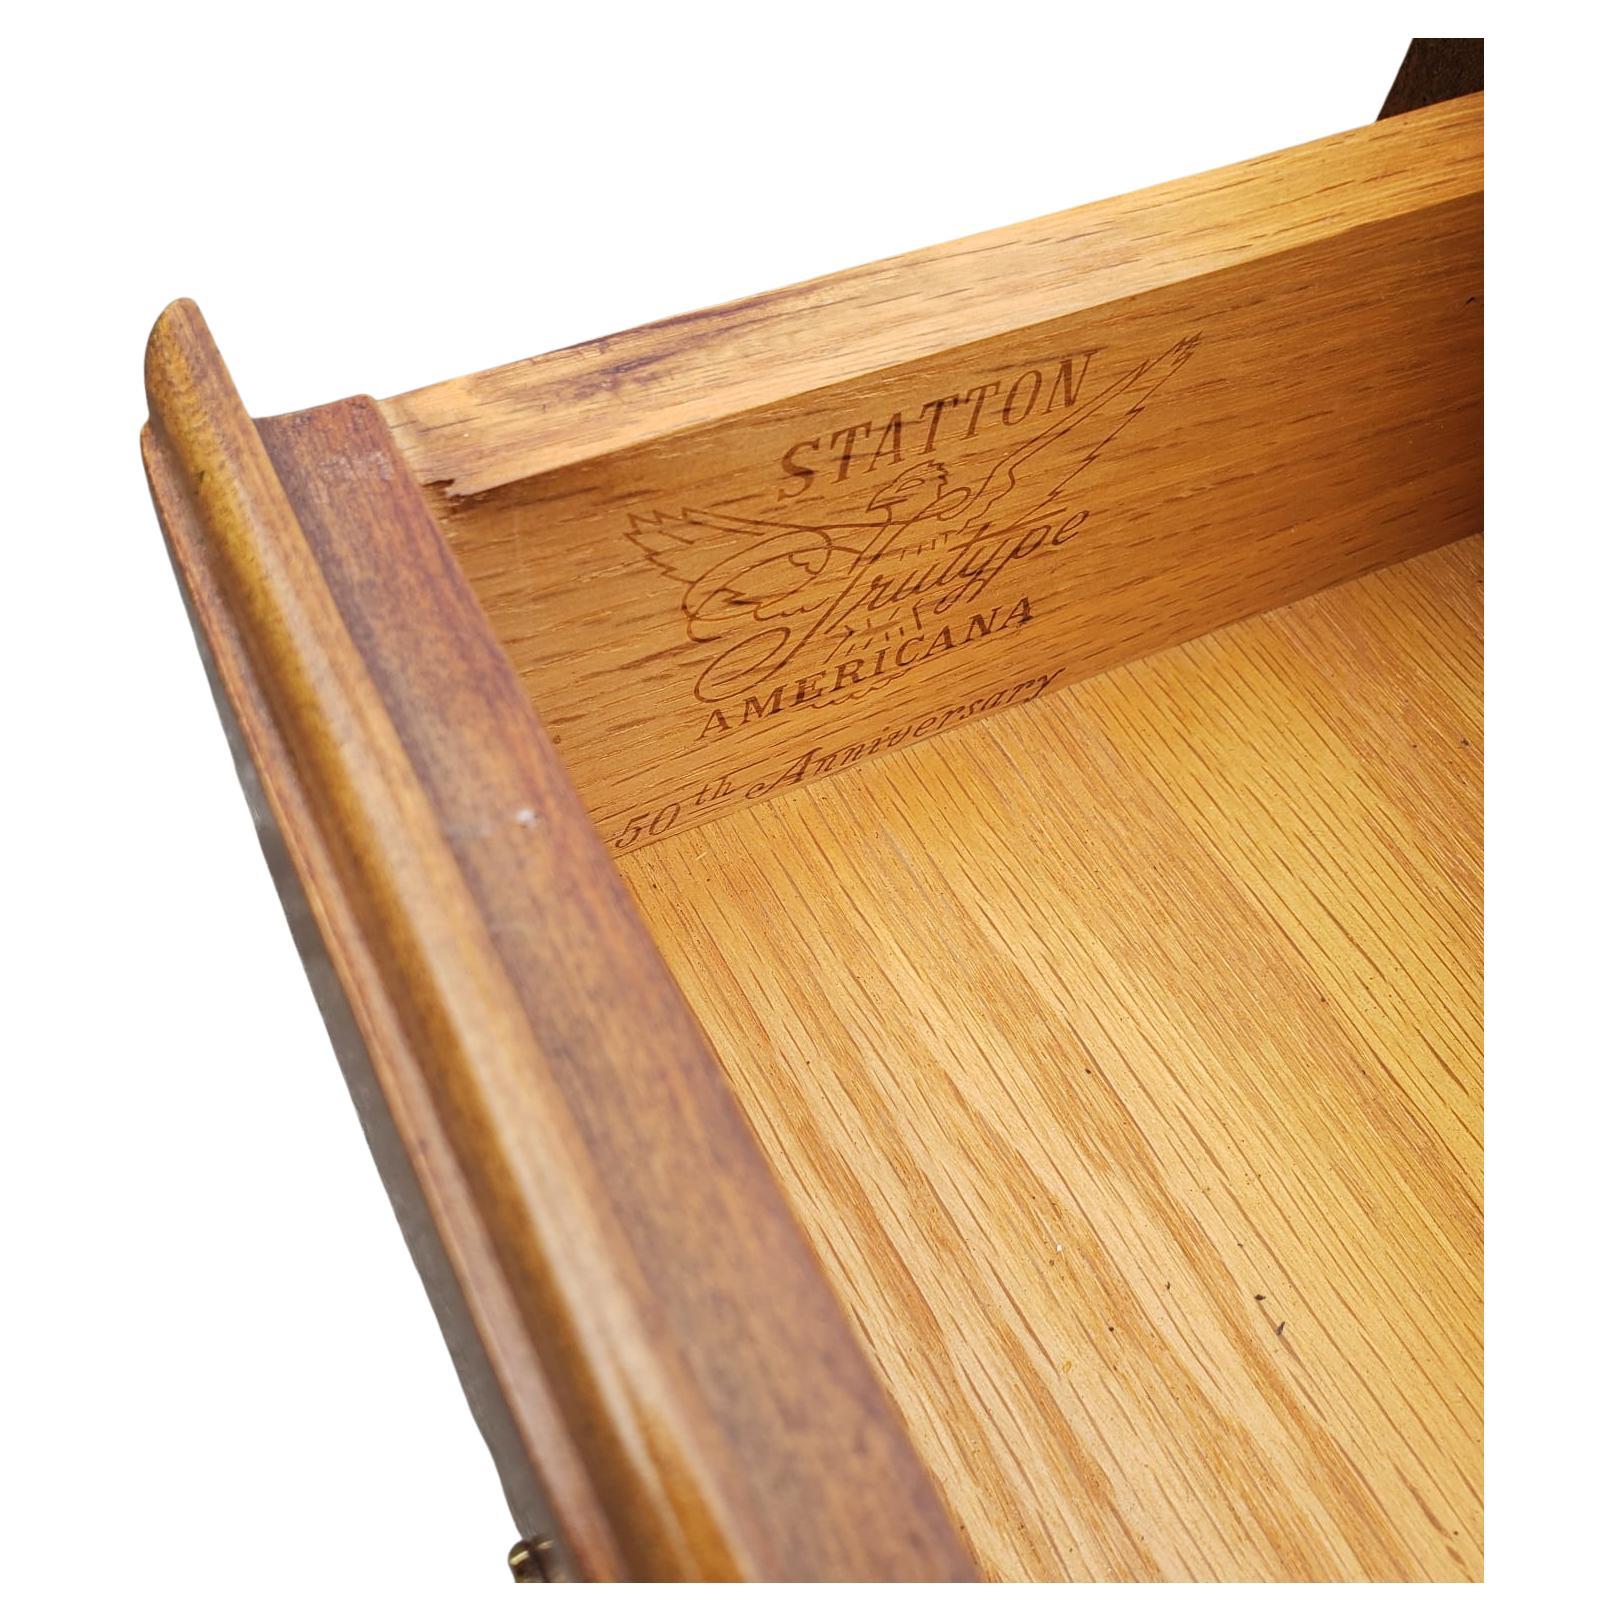 20th Century Statton Trutype Walnut Pembroke Drop-Leaf Table For Sale